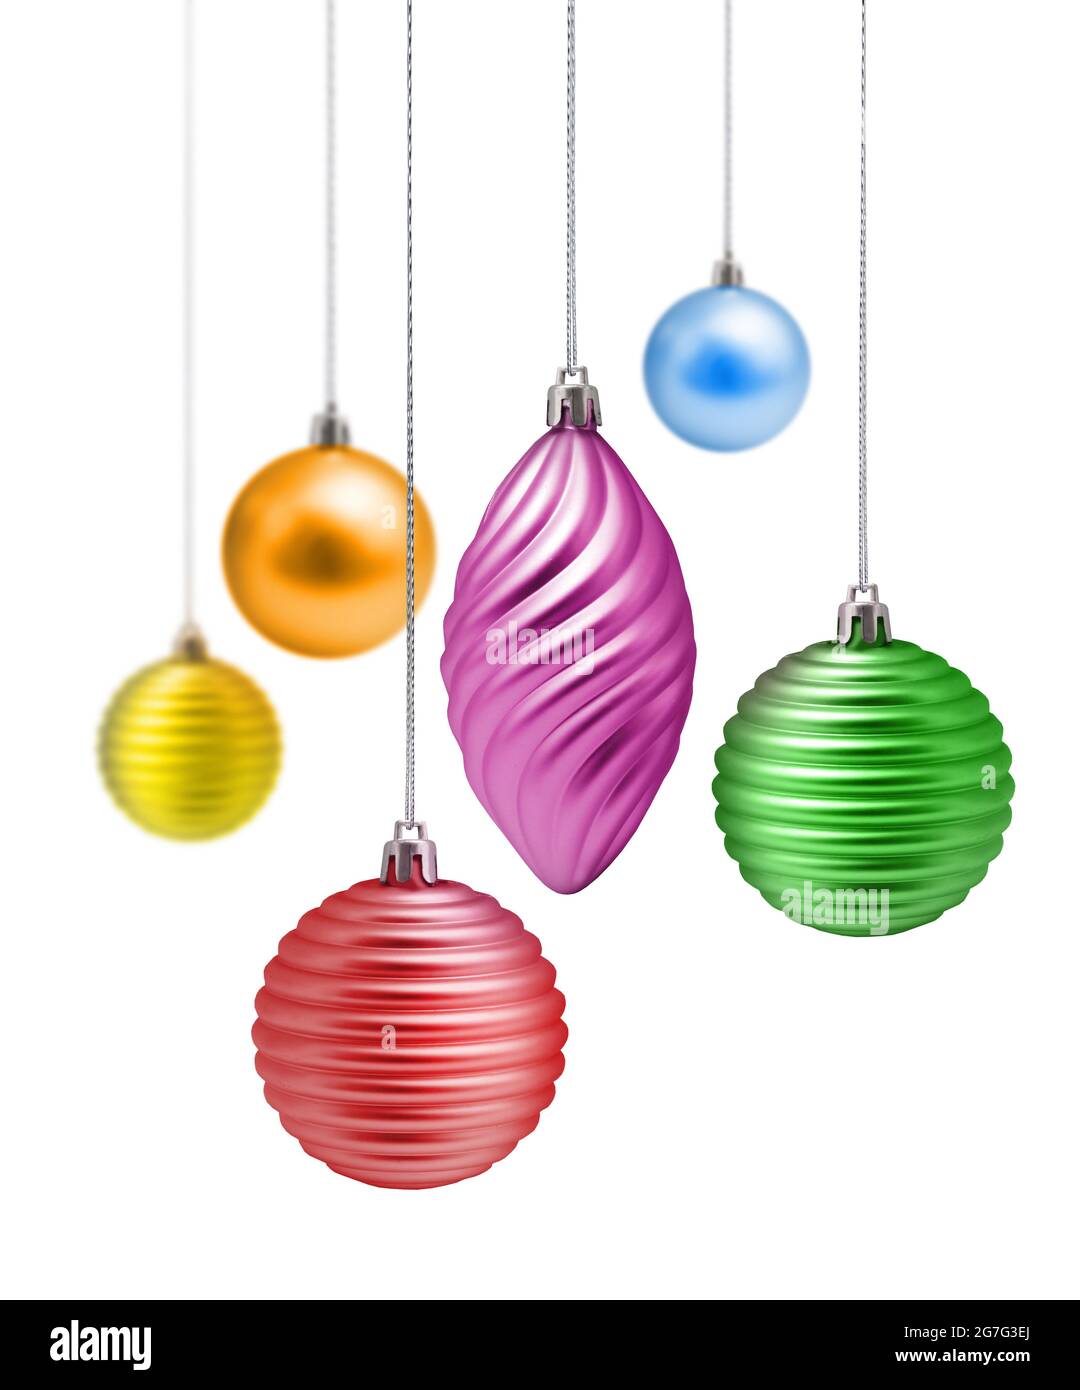 Weihnachtsdekoration in Metallic-Regenbogenfarben auf weißem Hintergrund Stockfoto